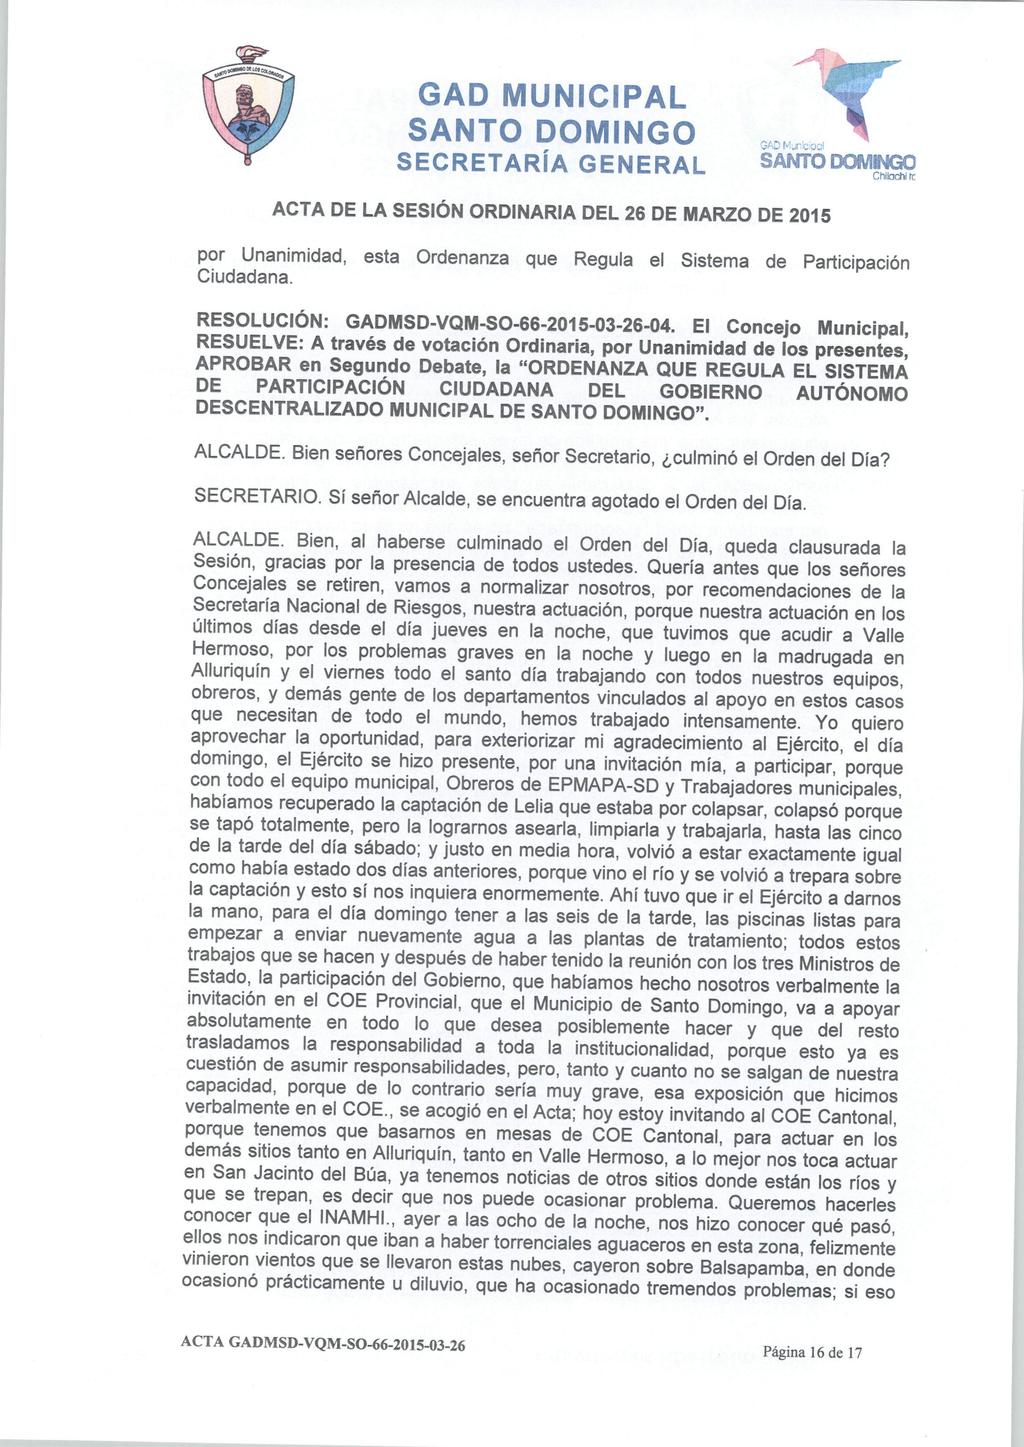 GADMunicipal Chltachl re por Unanimidad, esta Ordenanza que Regula el Sistema de Participación Ciudadana. RESOLUCIÓN: GADMSD-VQM-SO-66-2015-03-26-04.